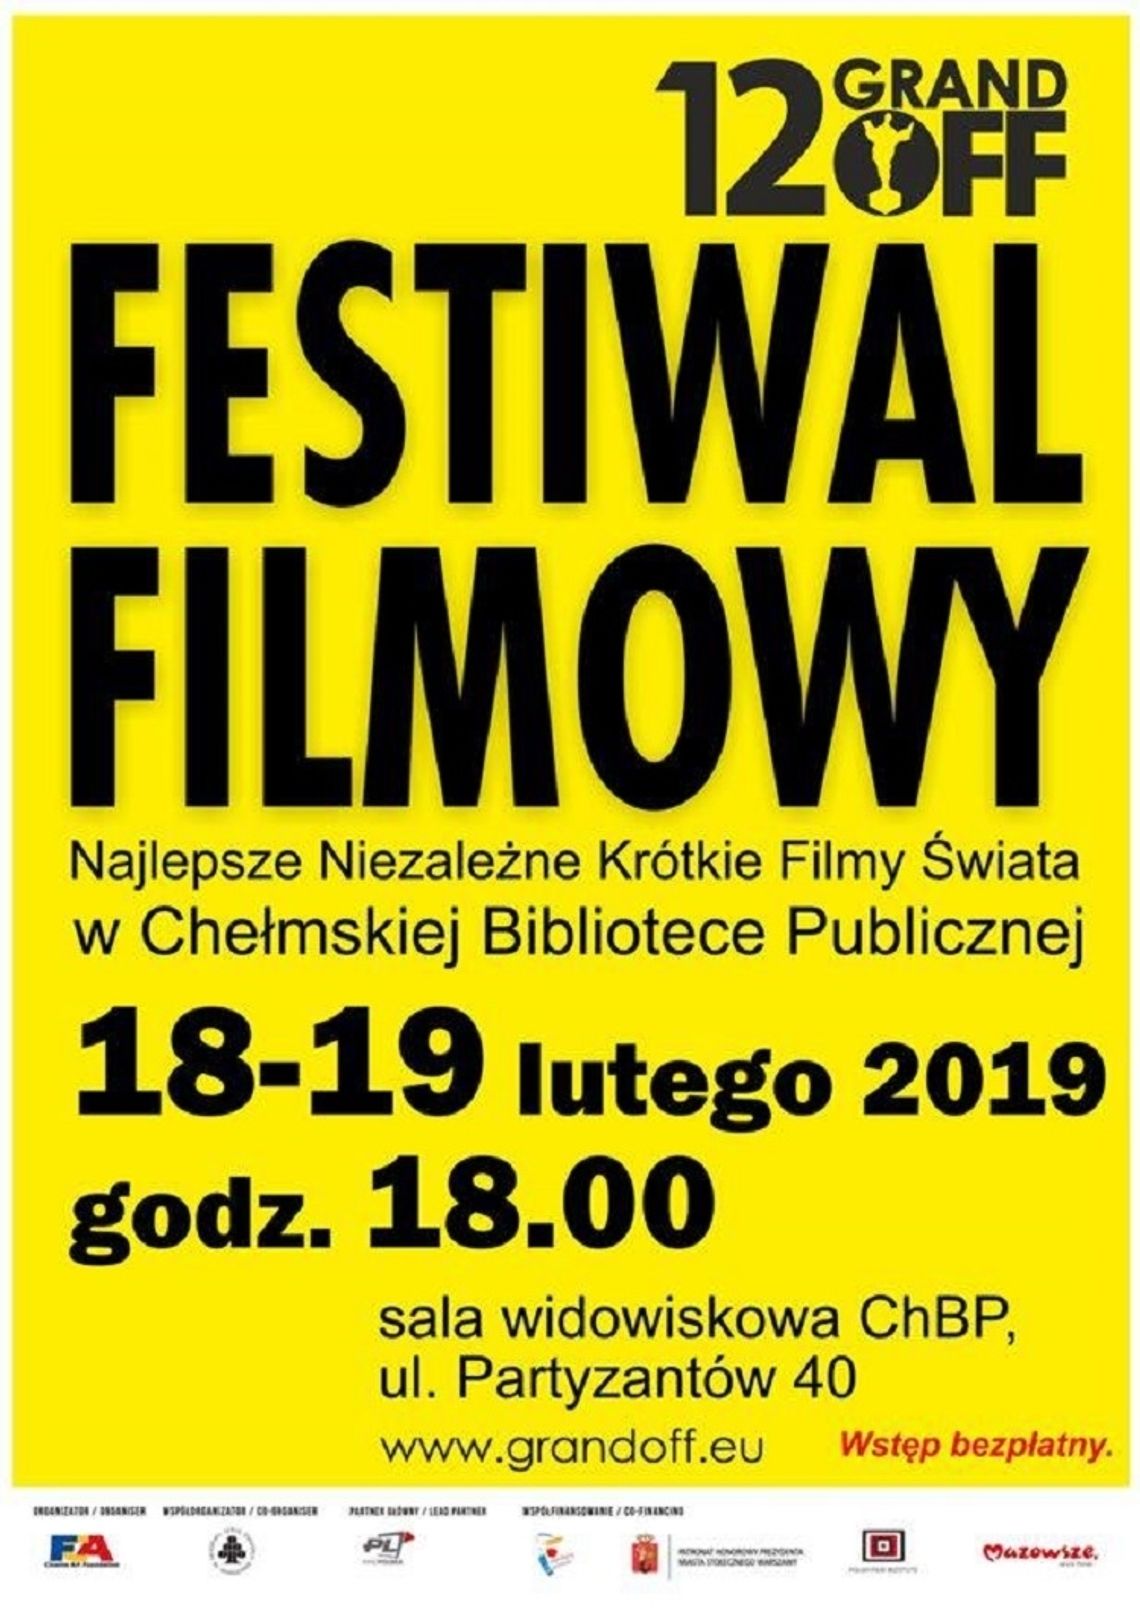 Chełmska Biblioteka Publiczna zaprasza na 12. filmowy Grand Off